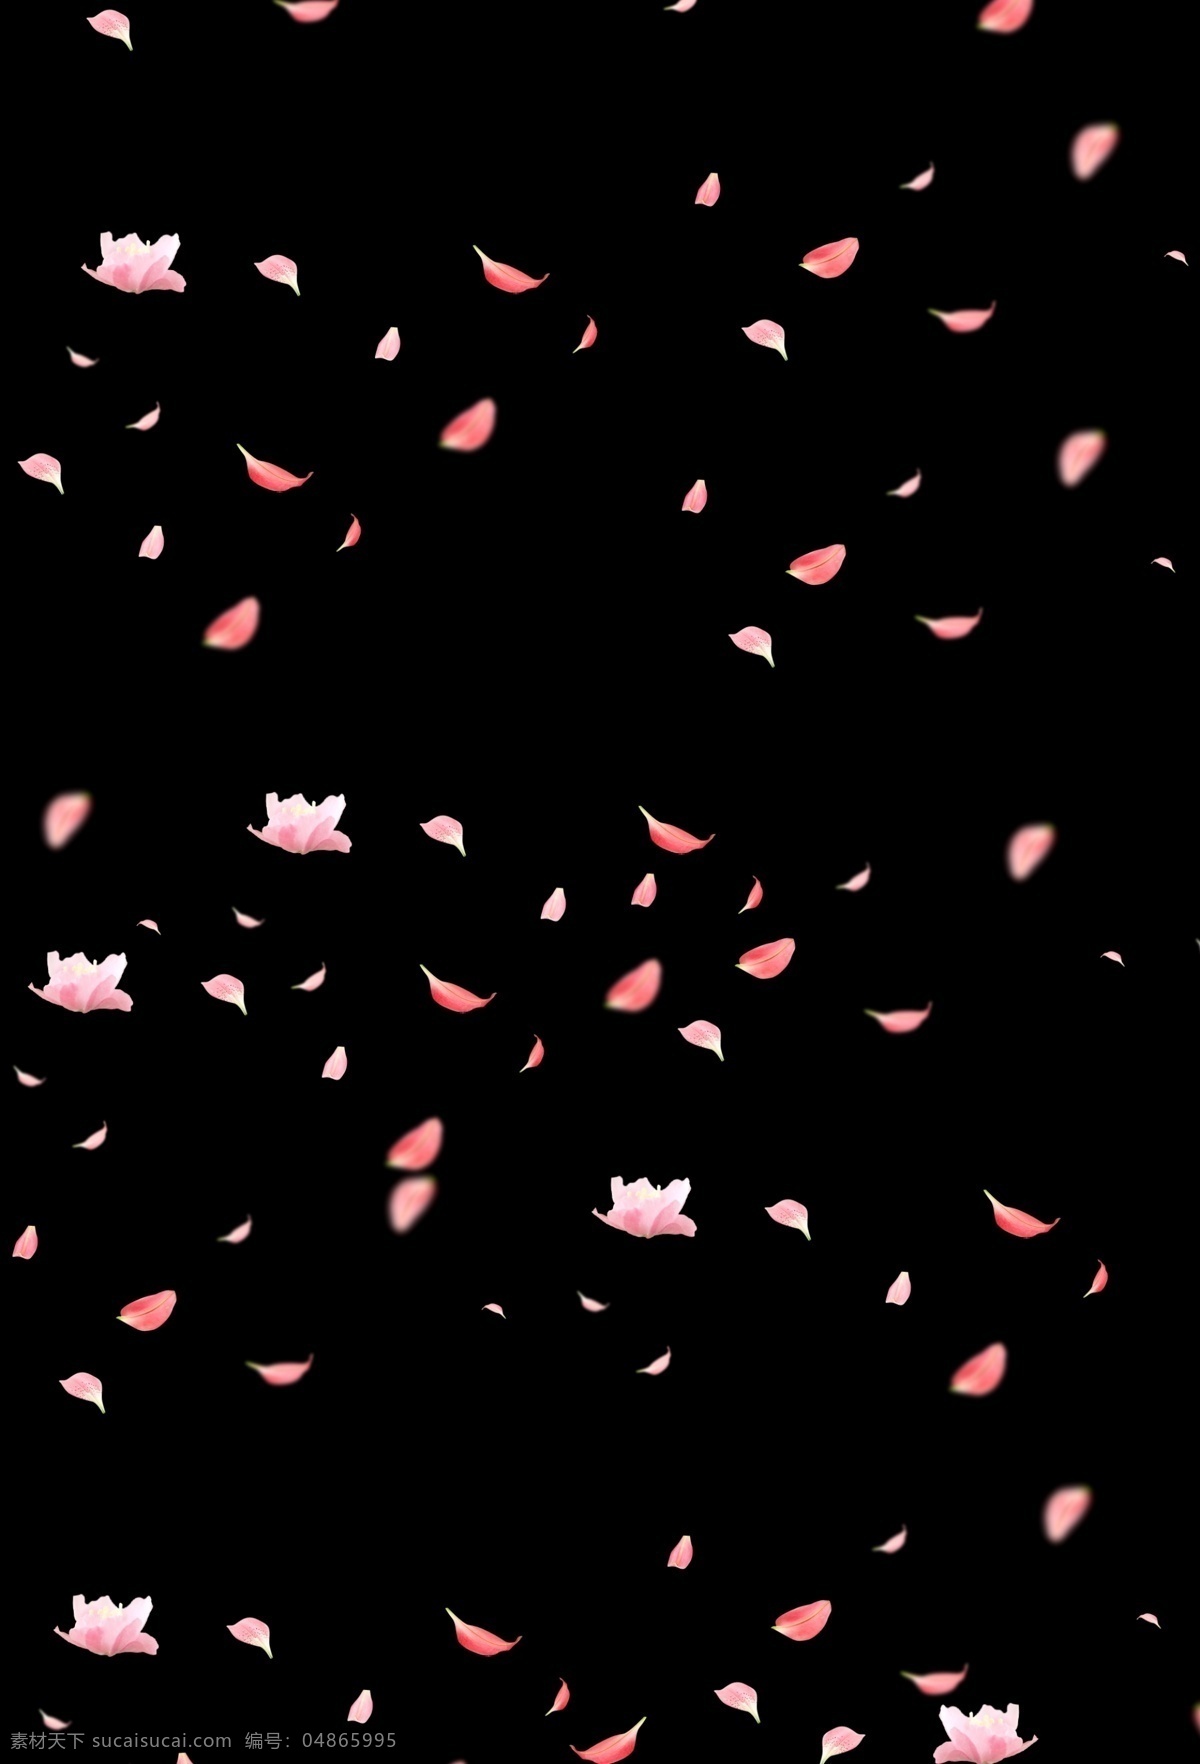 花瓣素材 花瓣元素 花瓣背景 花朵 花朵素材 花朵元素 花朵背景 花朵花瓣 玫瑰花瓣 玫瑰花朵 矢量花瓣 矢量花朵 卡通花瓣 卡通花朵 粉色花瓣 粉色花朵 红色花瓣 红色花朵 小花瓣 玫瑰花 粉色玫瑰花 情人节花瓣